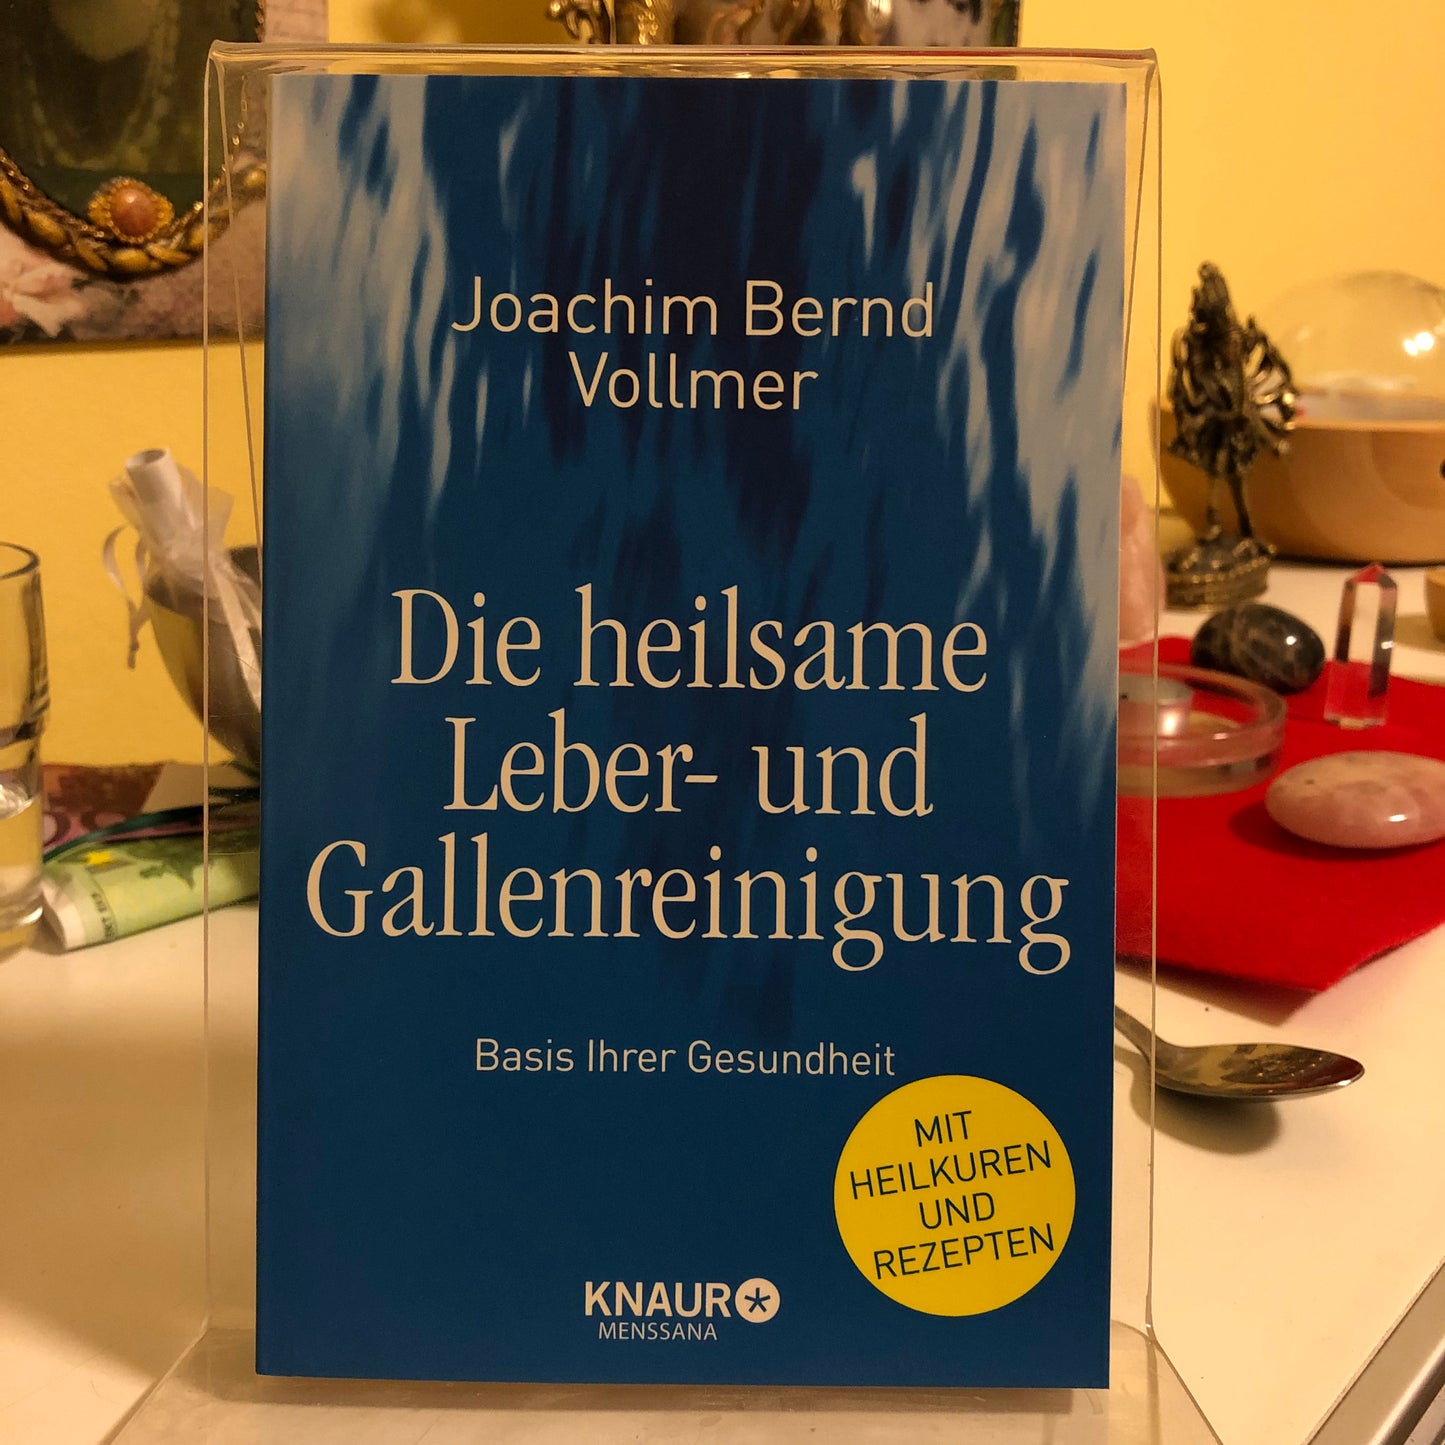 Die heilsame Leber- und Gallenreinigung - Joachim Bernd Vollmer